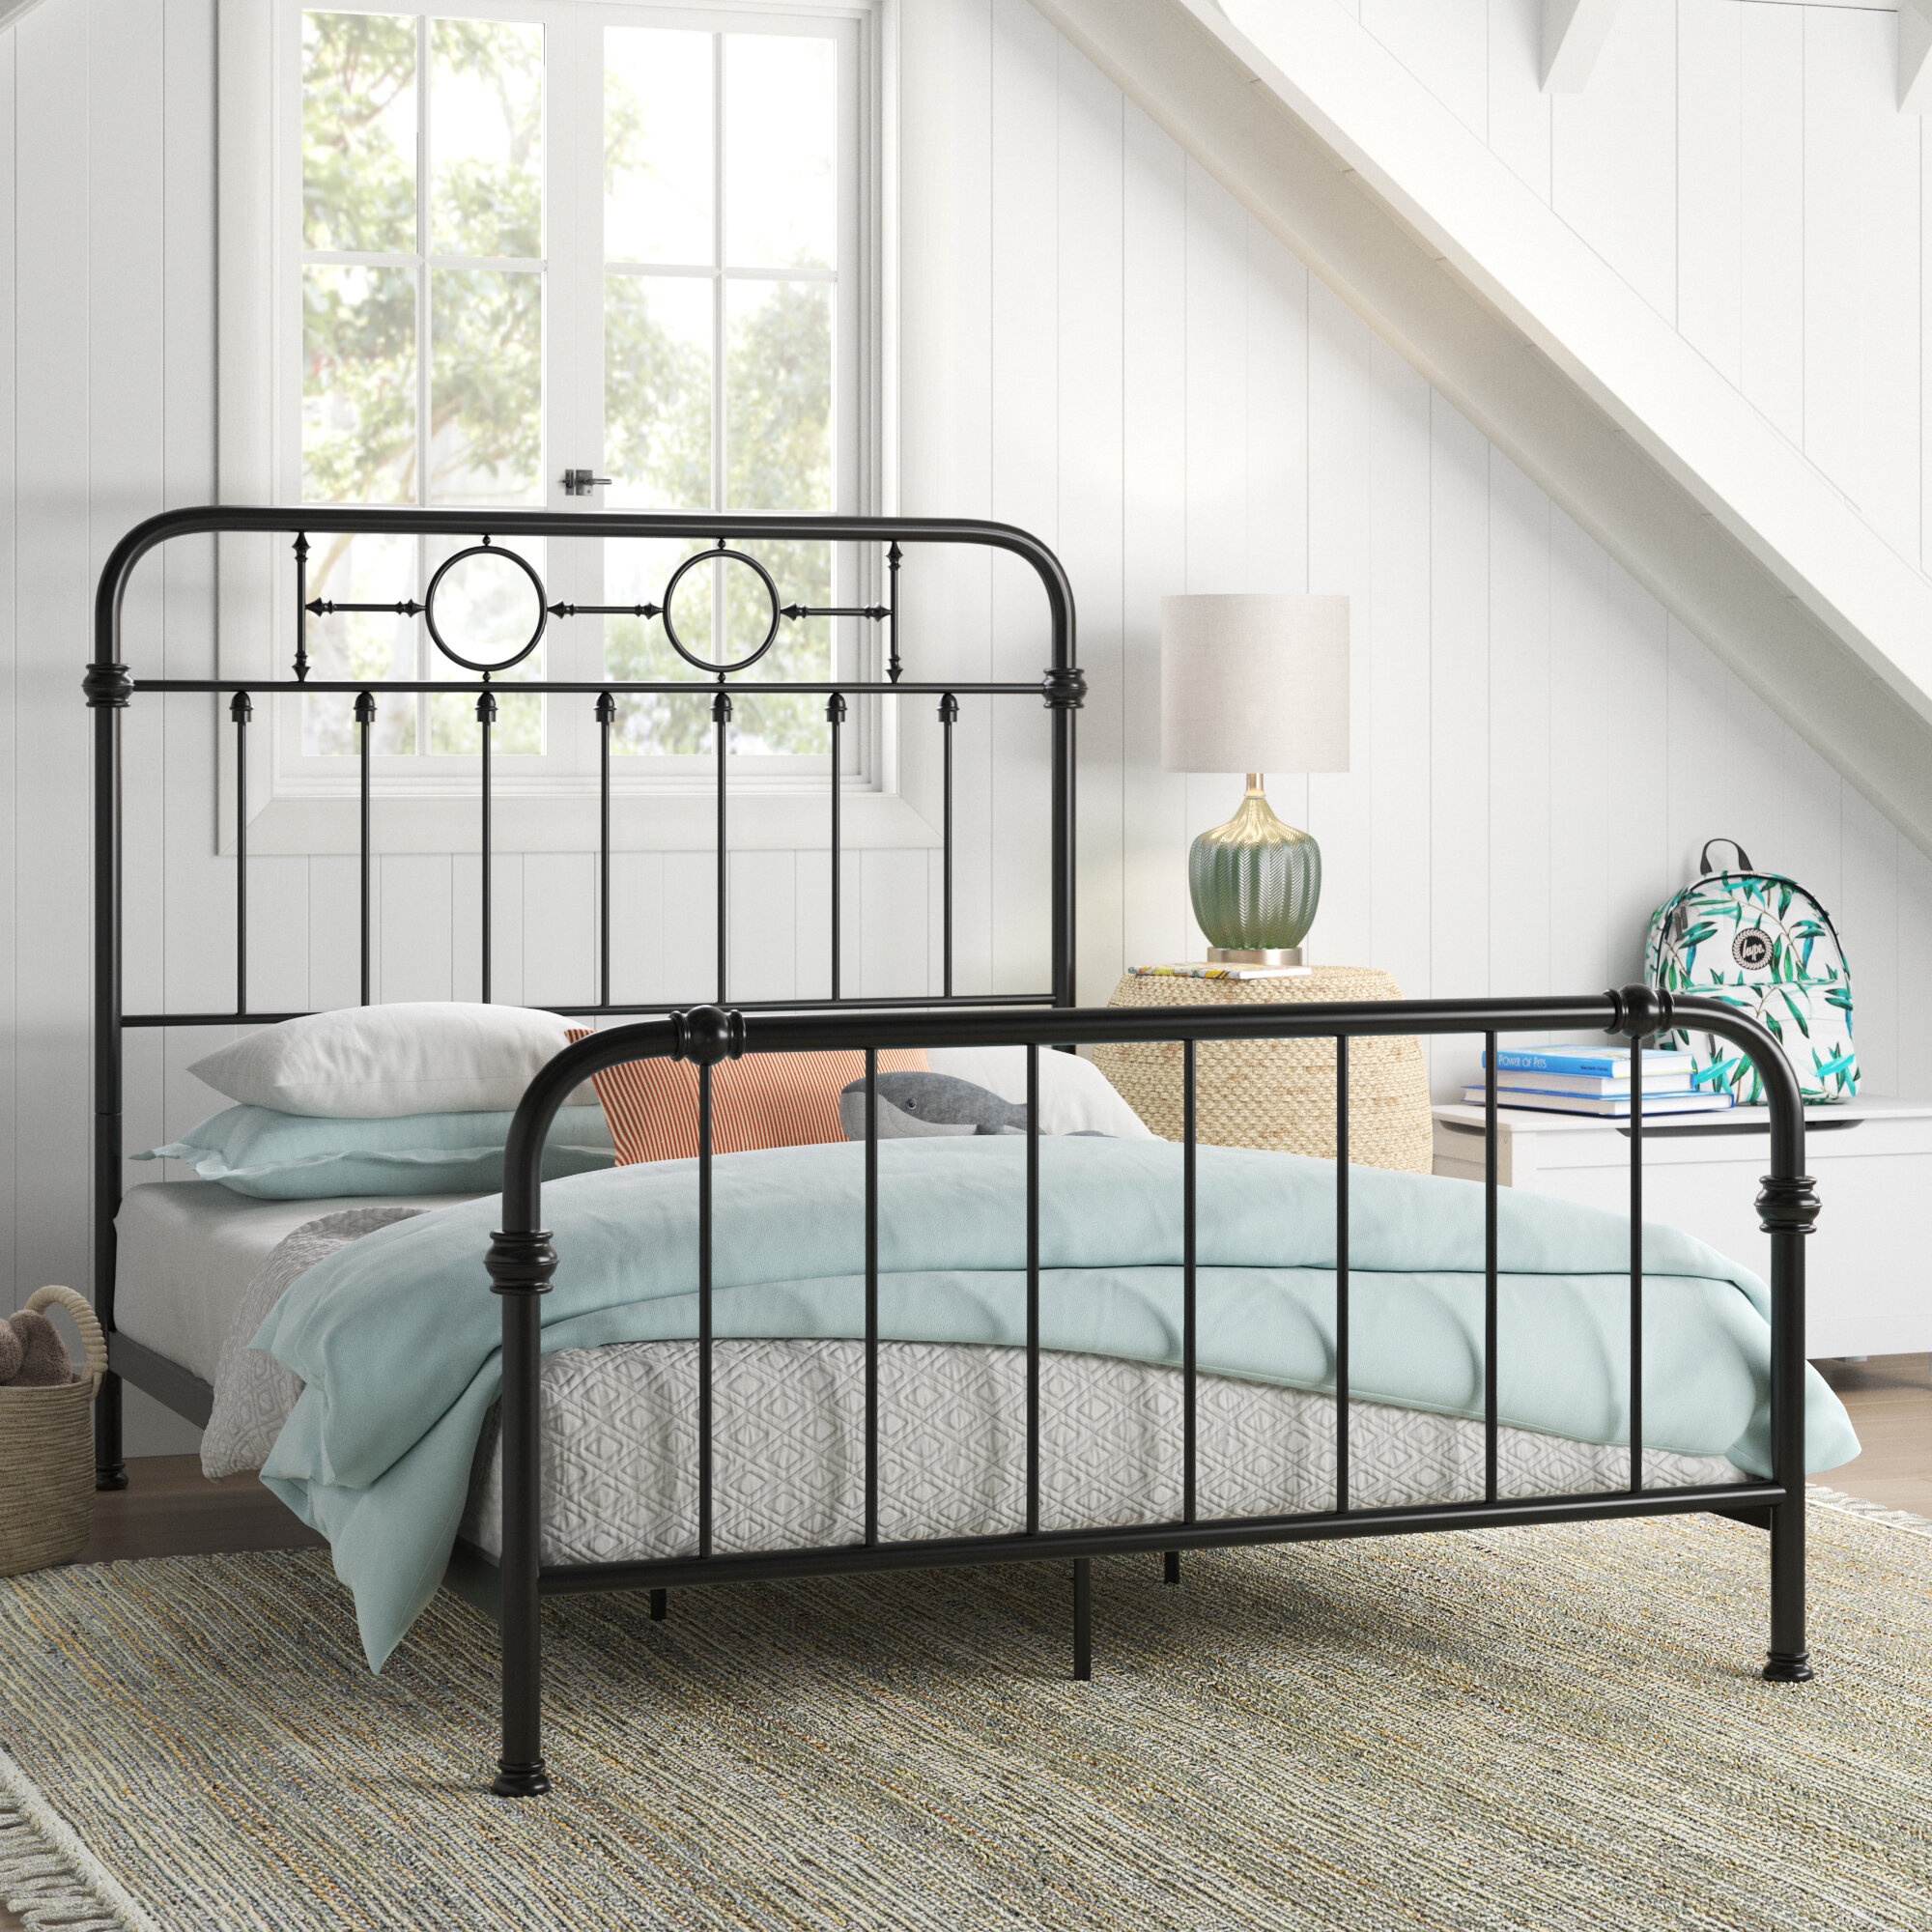 Single Bed Frame 3FT Metal Bed Frame Vintage Metal Beds Bedroom Furniture with Headboard Vintage Bed Base For Children and Adults